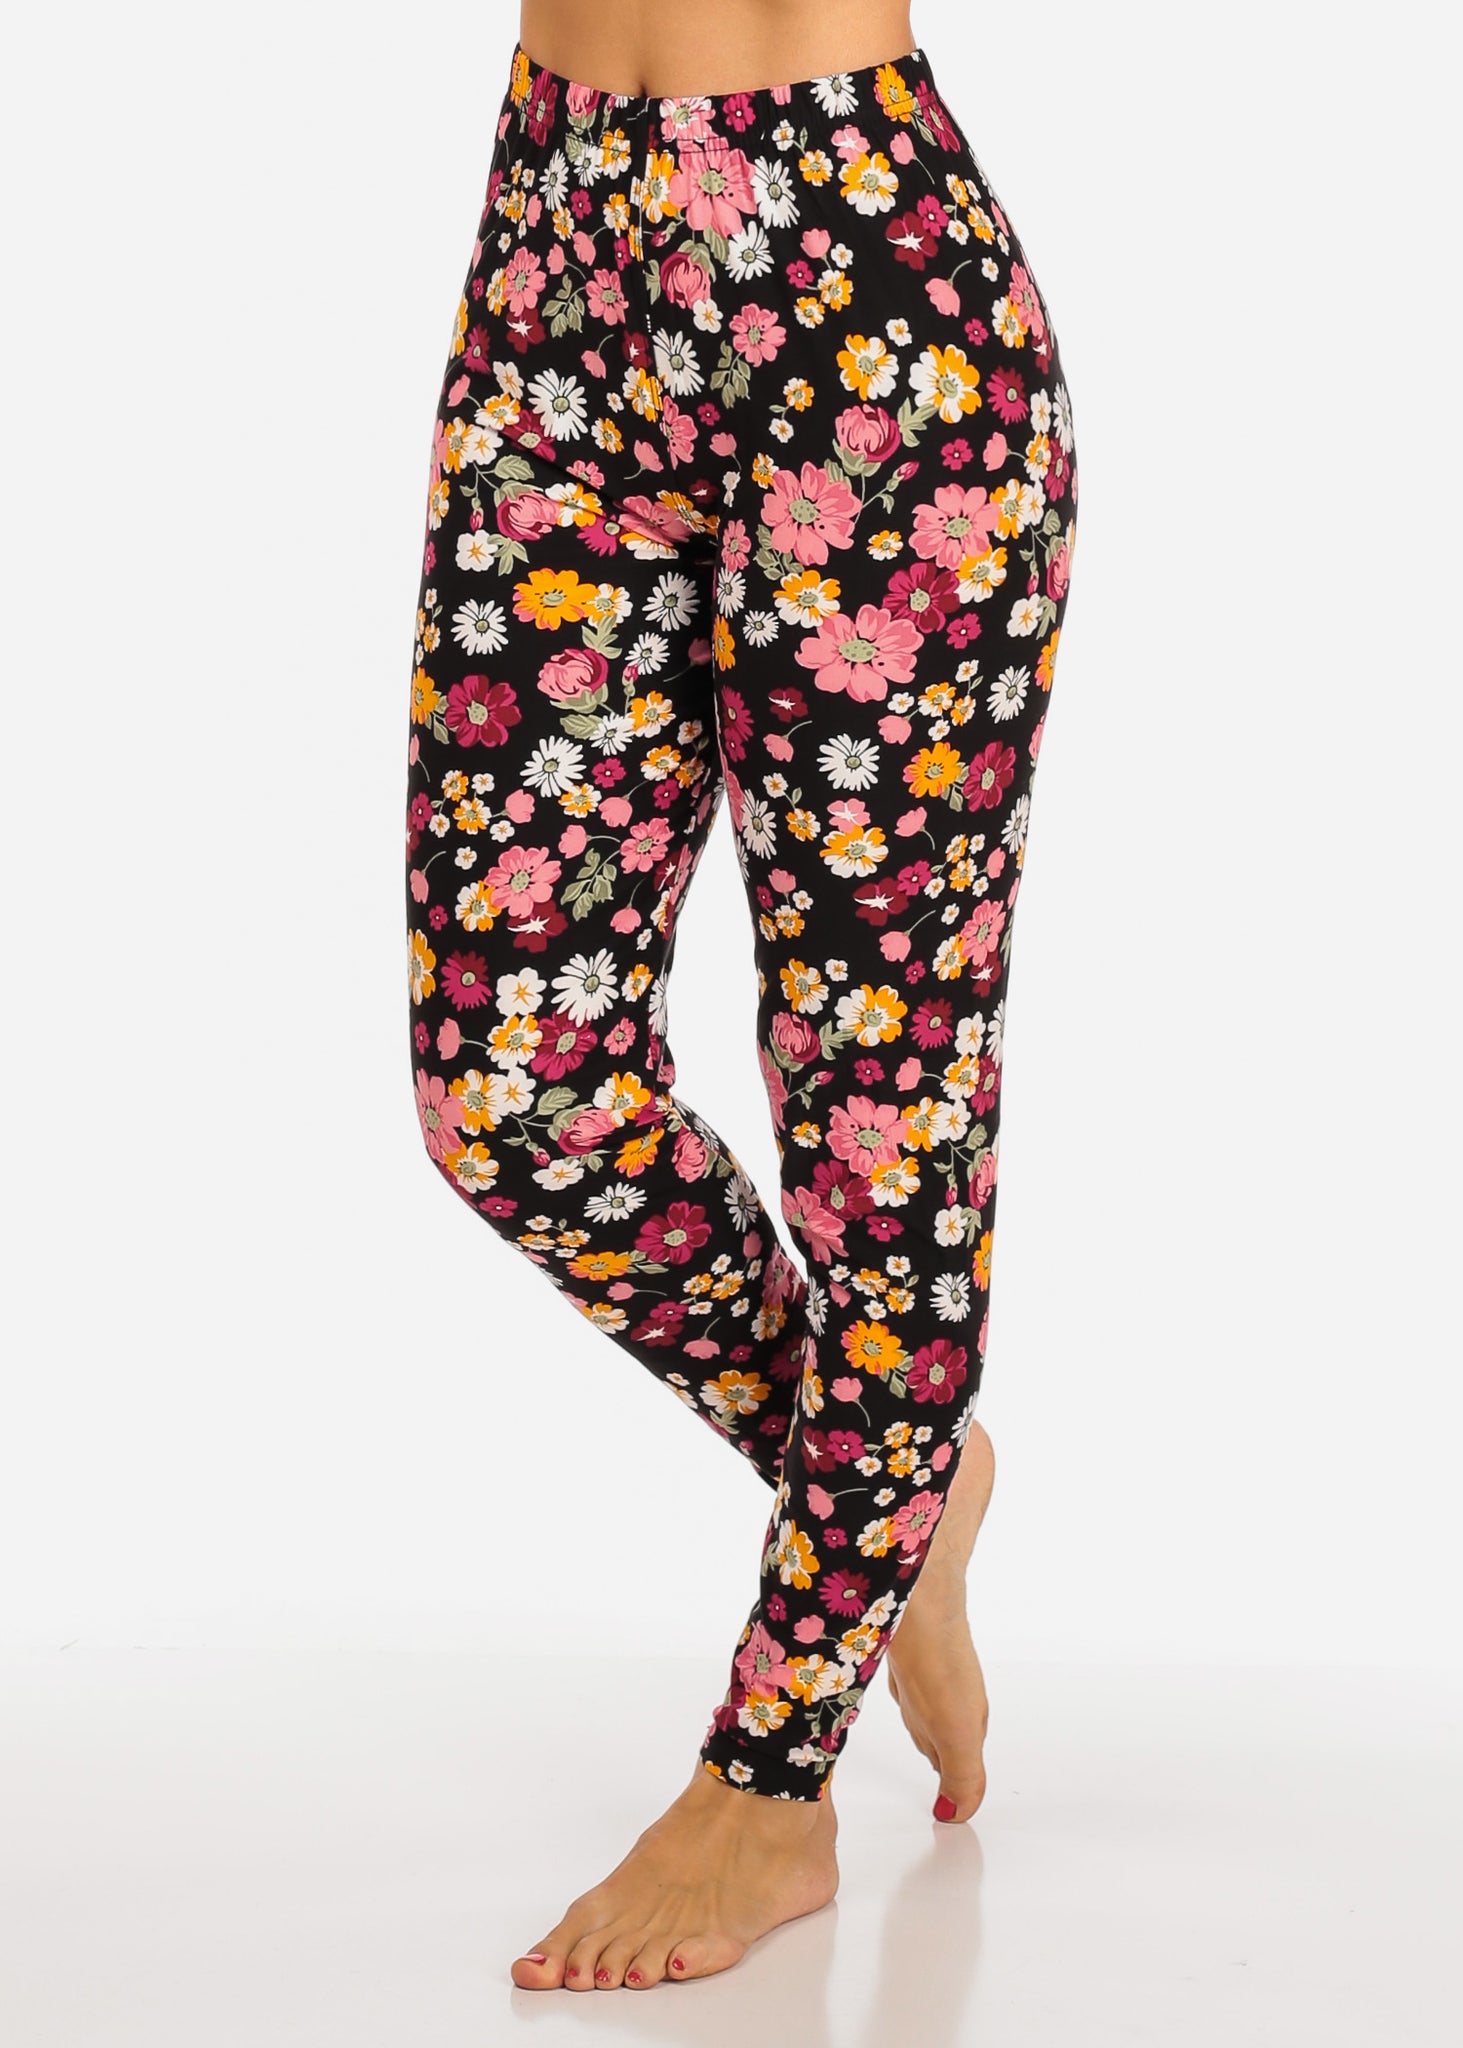 Daisy Flower Design Multi Color Women's Leggings Skinny Leg Pants F-43 –  One Size Fits